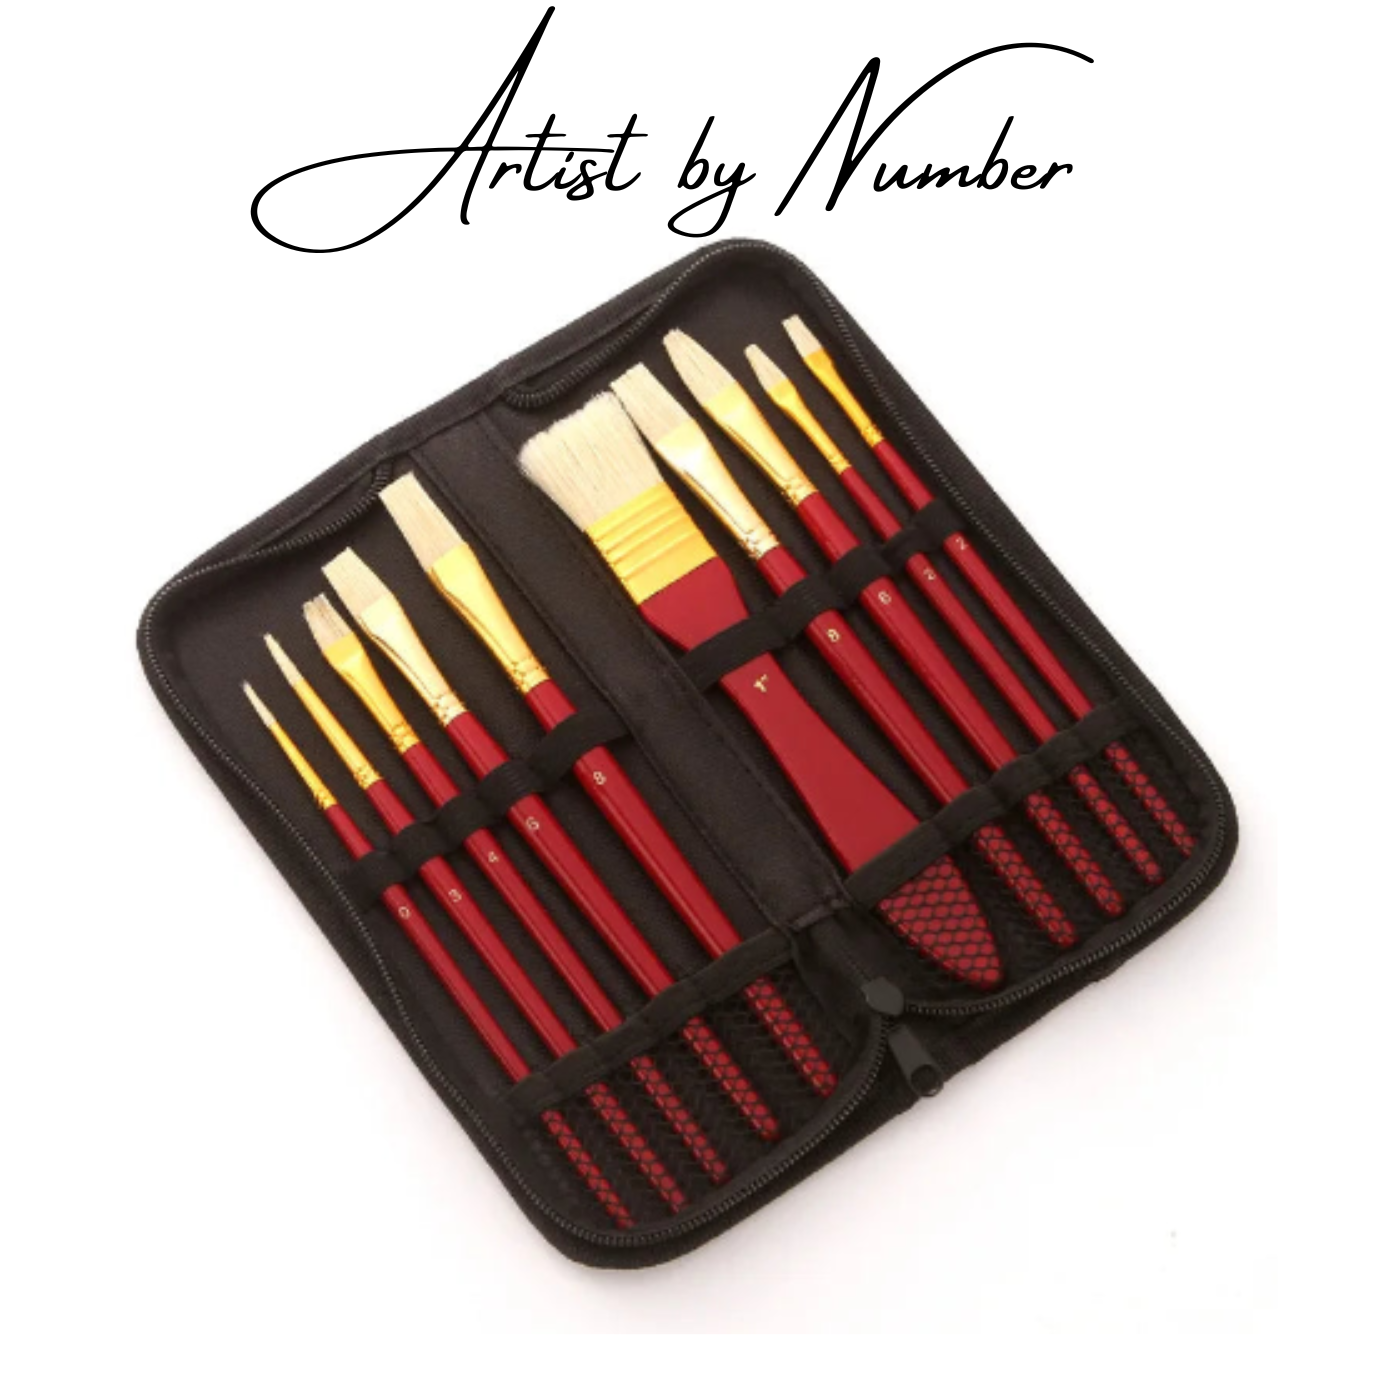 10 Piece Premium Artist Paint Brush Set with Zipper Pouch